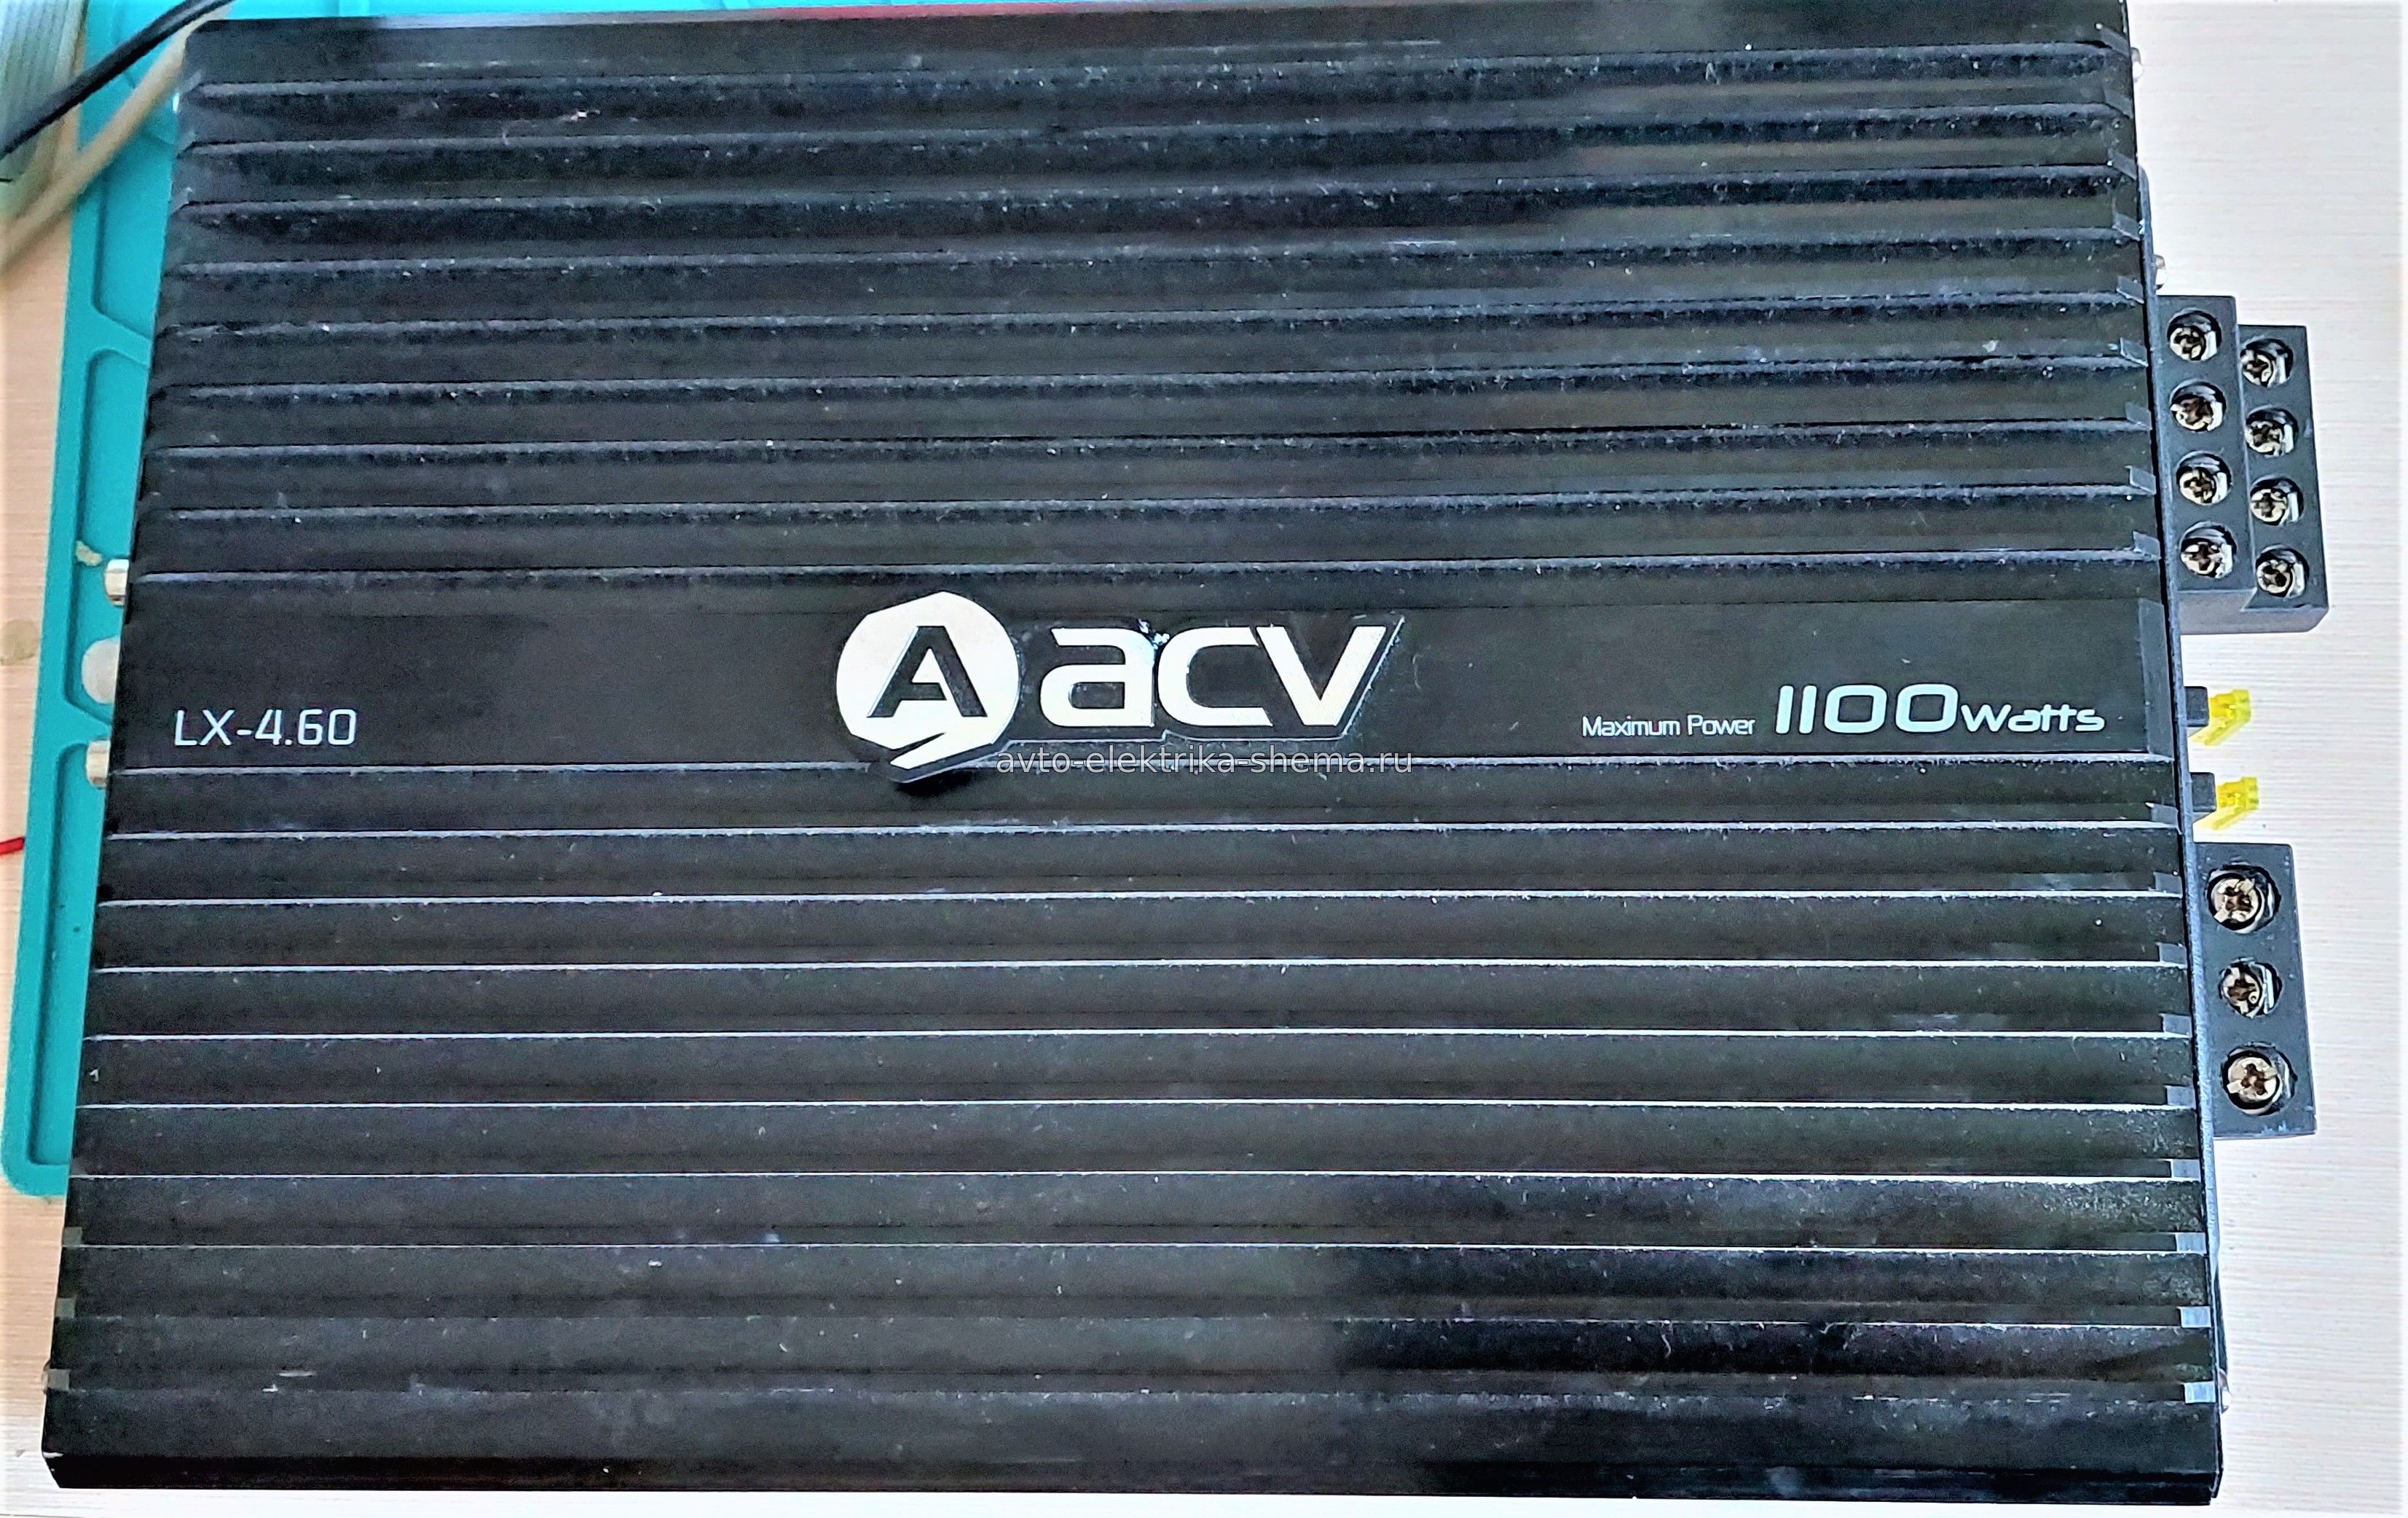 Ремонт автомобильного усилителя ACV LX-4.60, без замены деталей